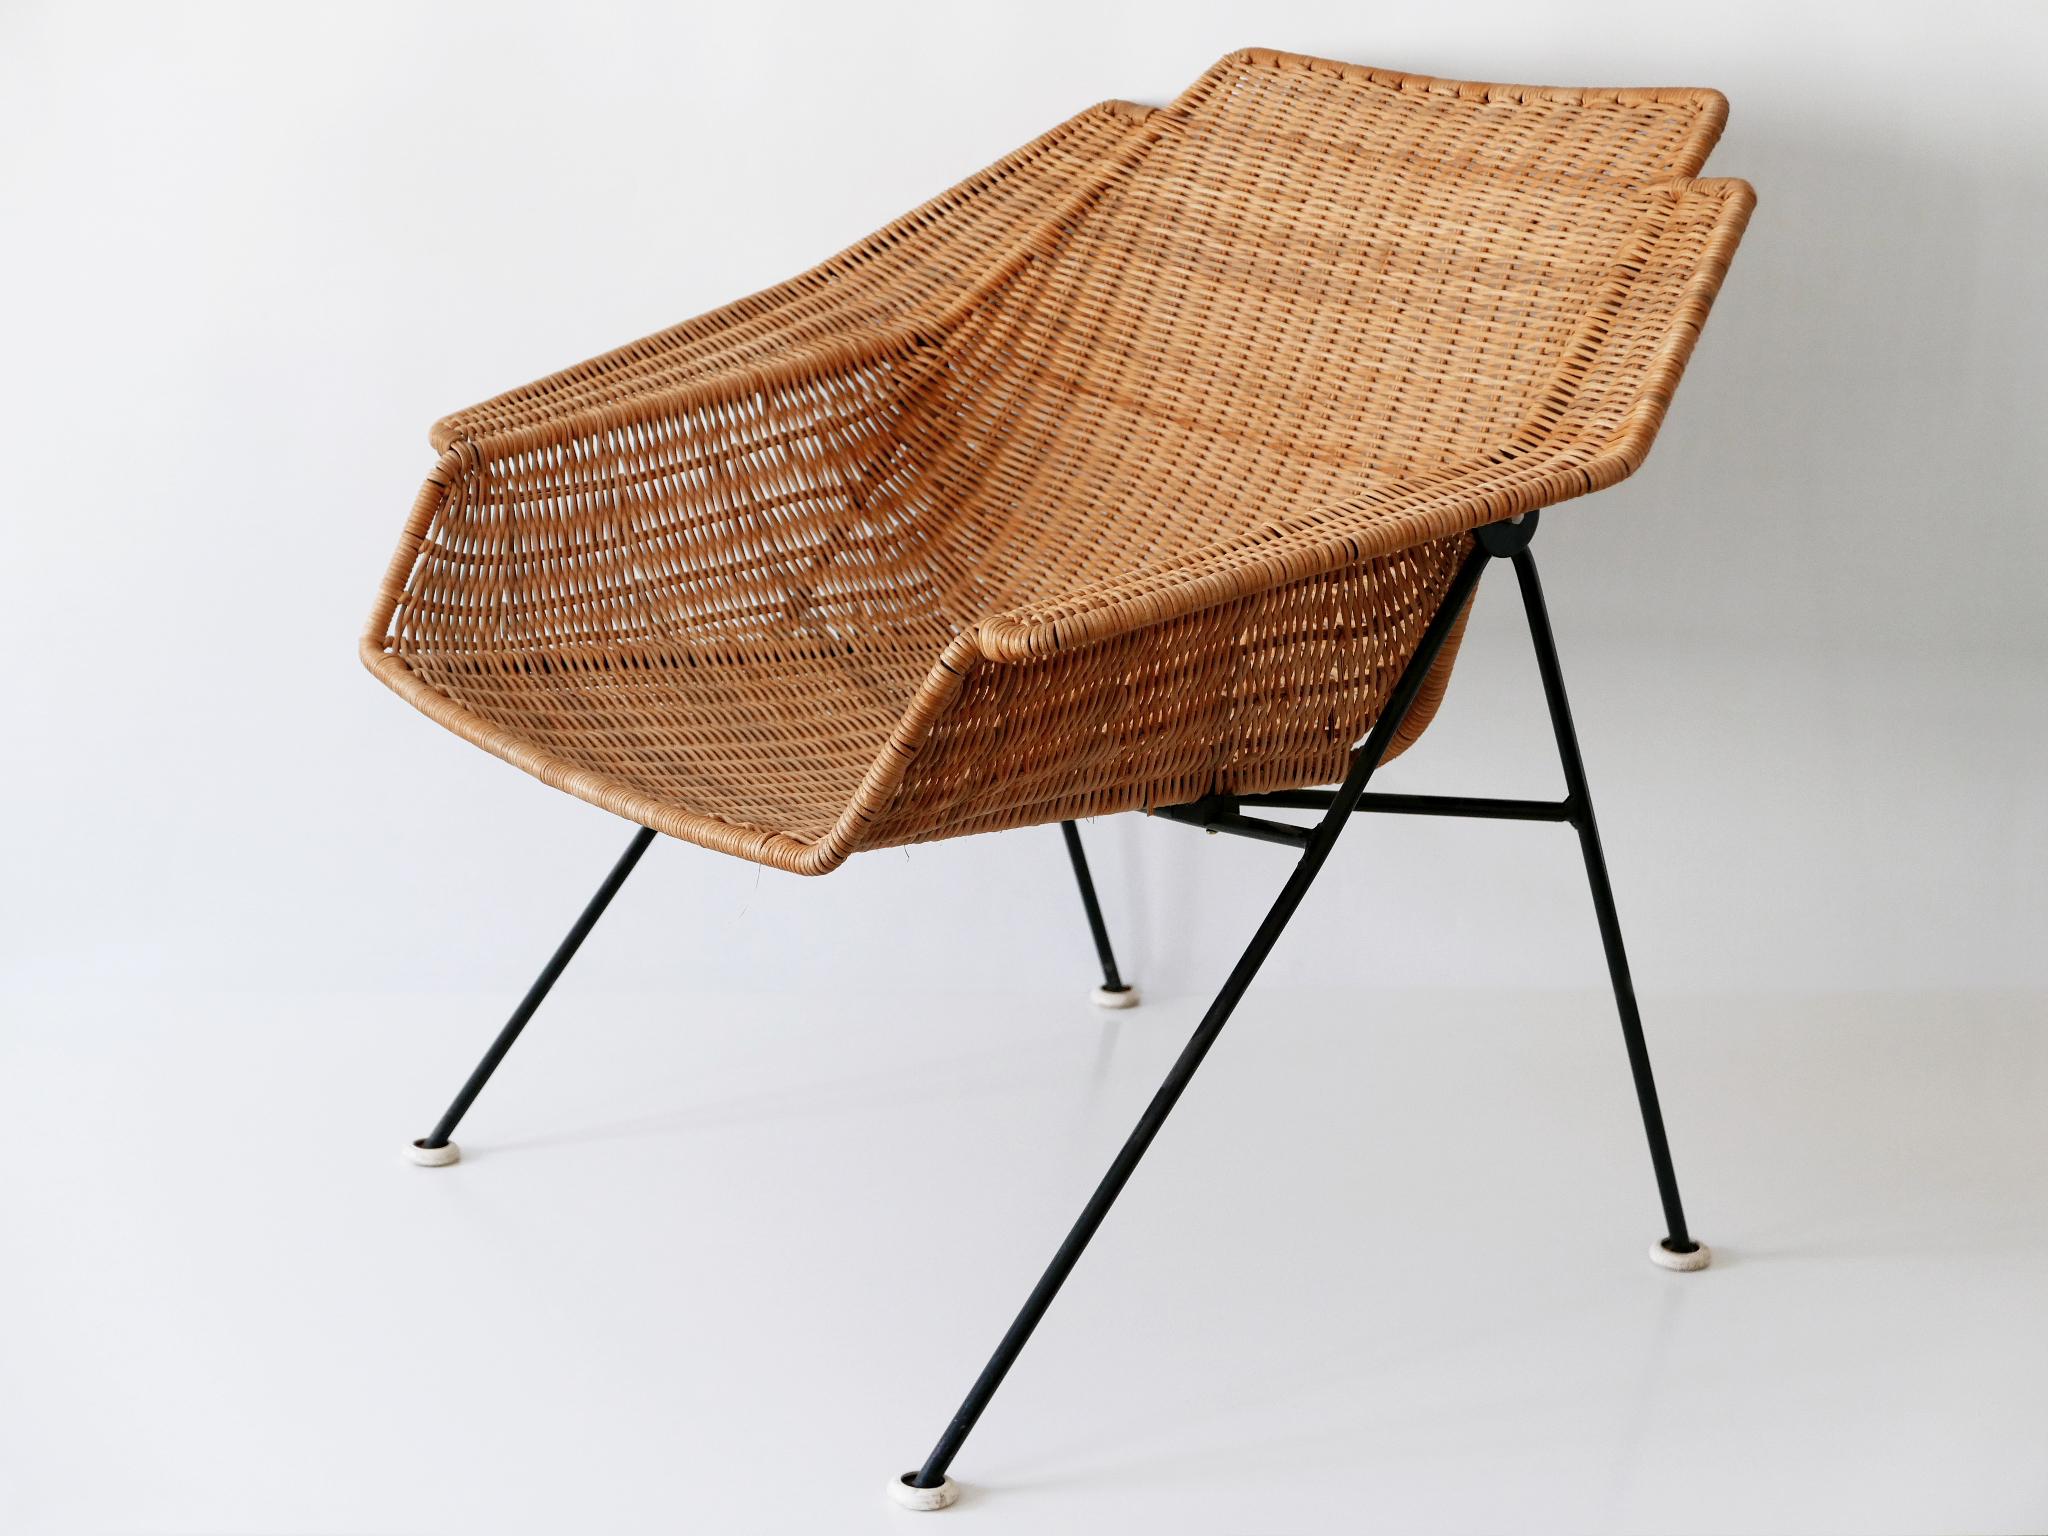 Äußerst seltener, großer und dekorativer Mid-Century Modern Geflechtsessel oder -sessel. Entworfen und hergestellt wahrscheinlich in den 1950er Jahren, Schweden.

Der Stuhl ist aus Korbgeflecht und Metall gefertigt. 

Guter alter Zustand.